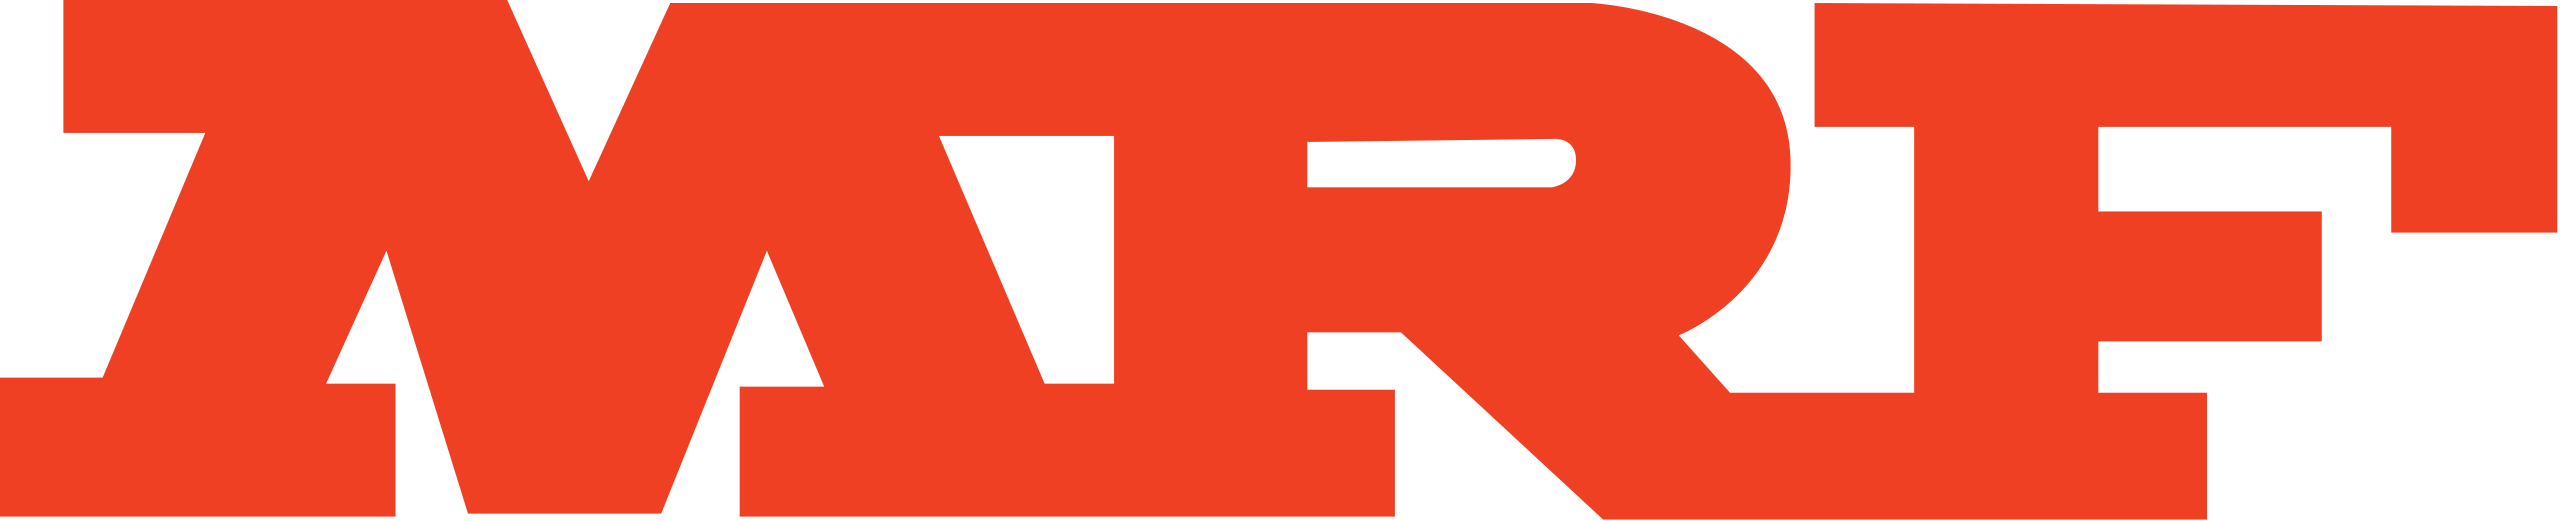 mrf-logo